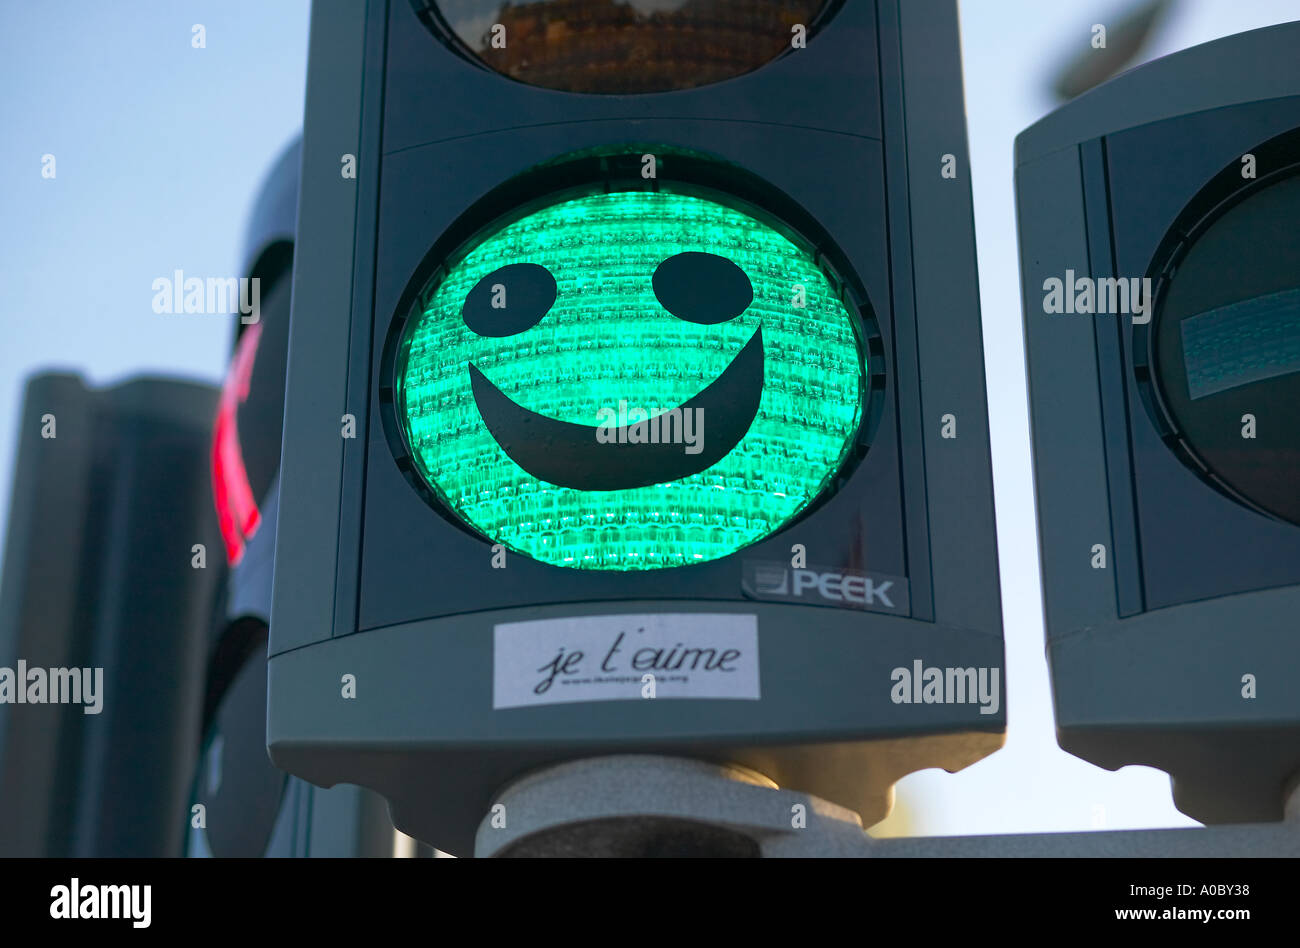 Smiley on green traffic light, Copenhagen, Denmark Stock Photo